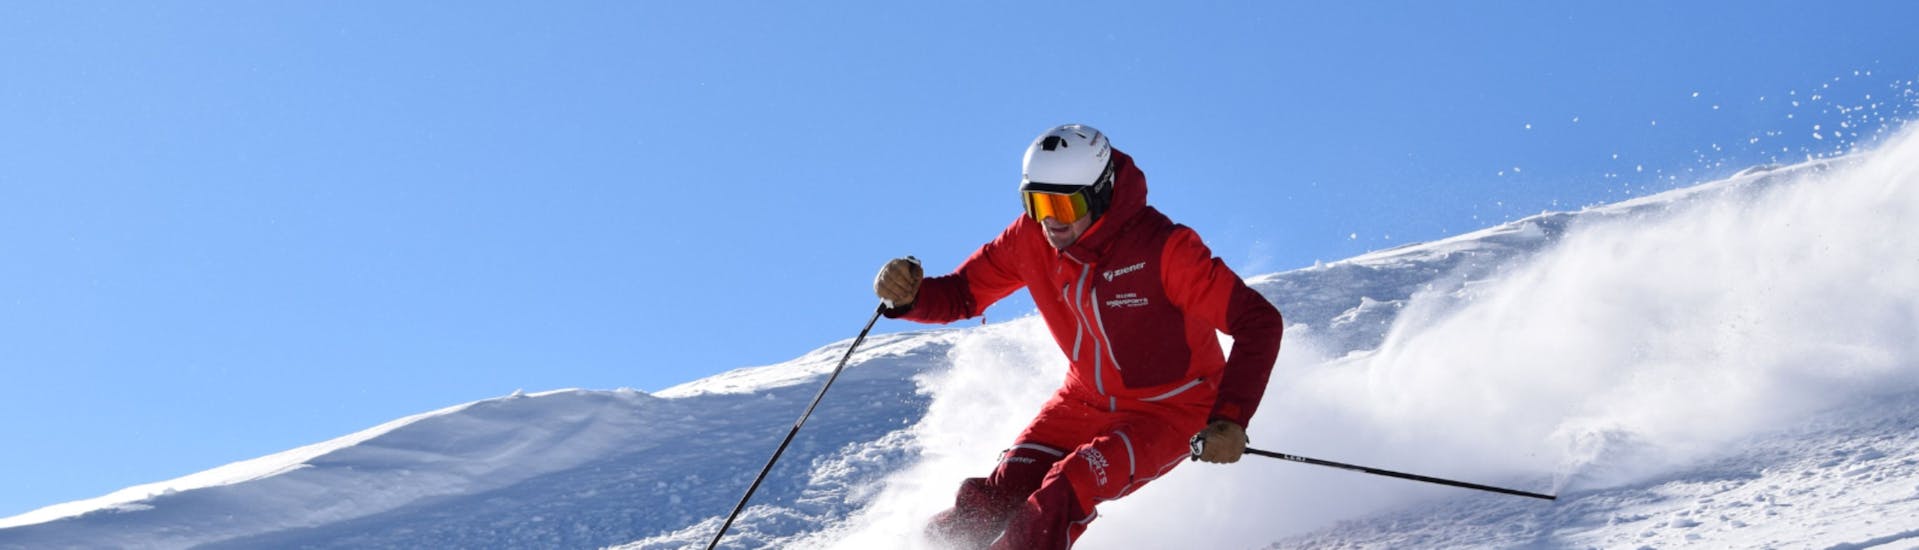 Lezioni di sci per adulti a partire da 15 anni con esperienza.